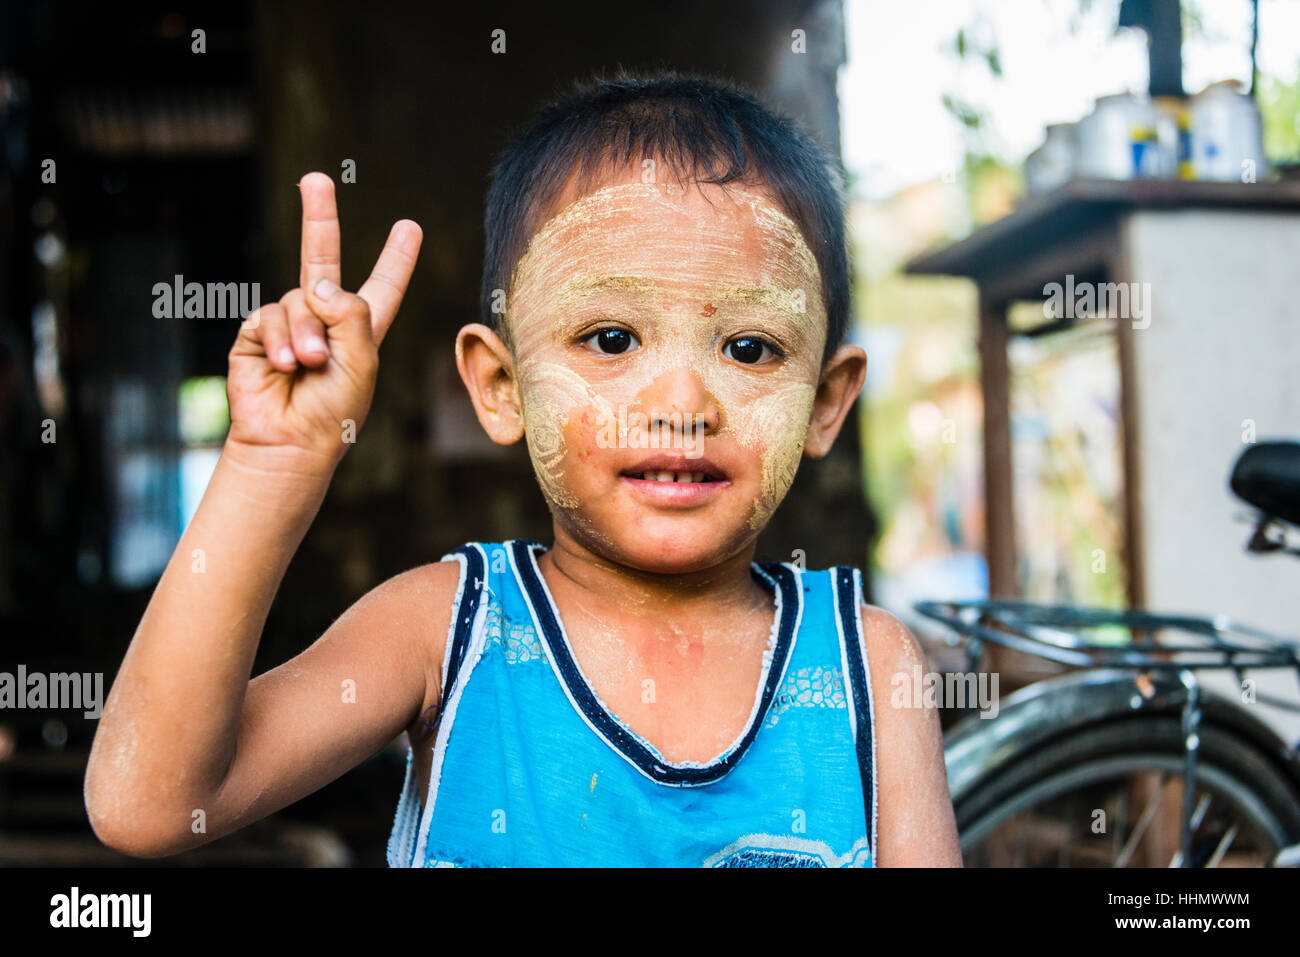 Kleinen einheimischen jungen posieren, Victory-Zeichen, V-Zeichen, Frieden, Porträt, Yangon, Myanmar Stockfoto